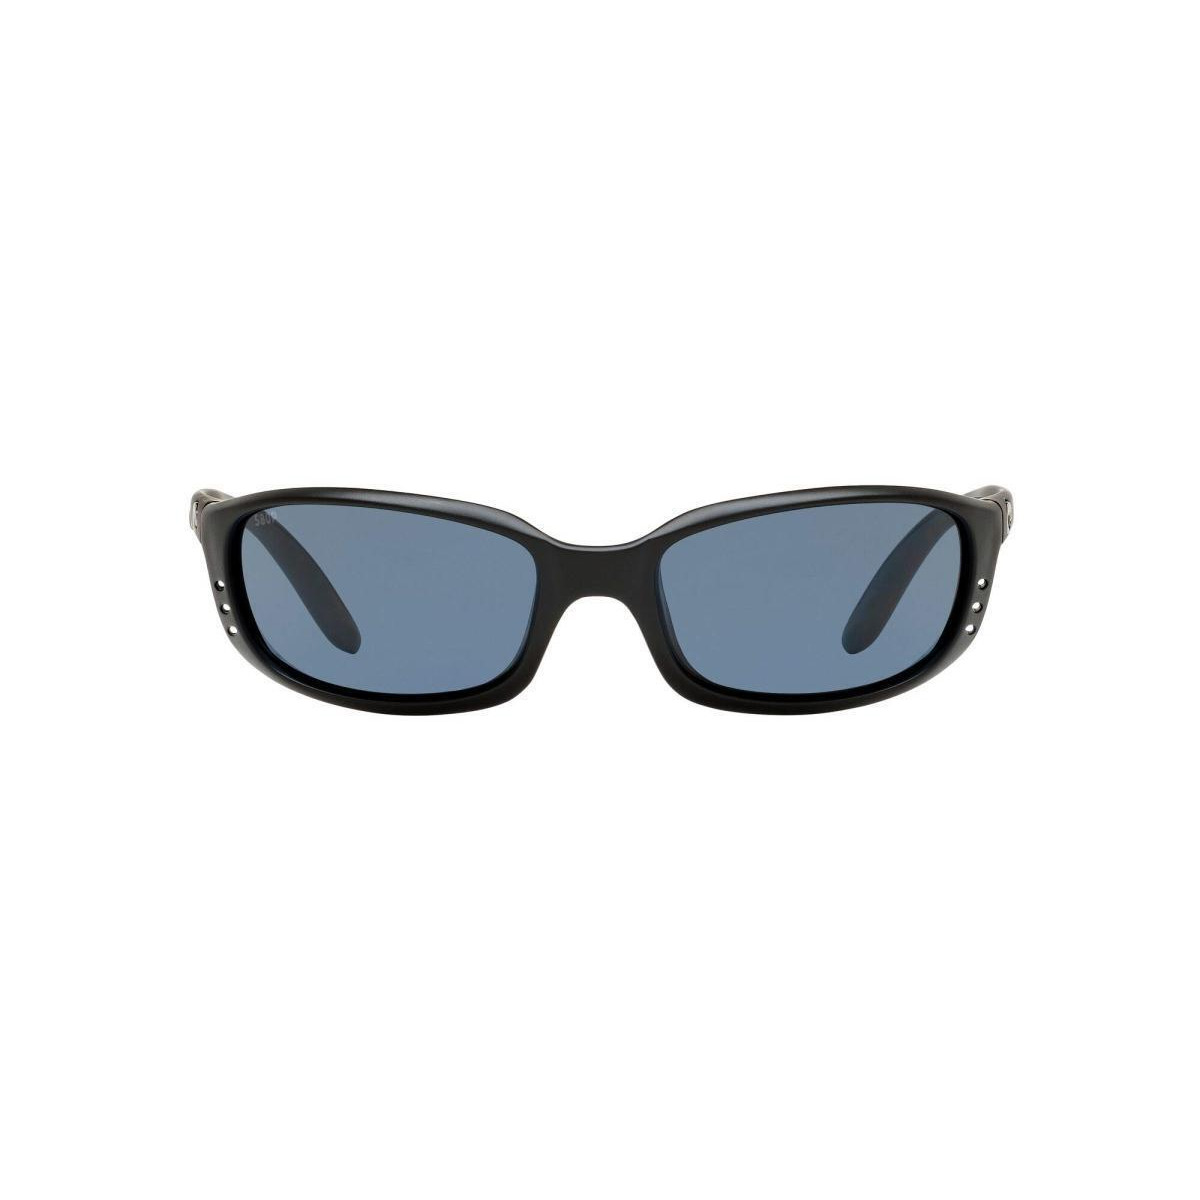 Costa Del Mar 06S9017-90170359 59 mm Brine Oval Sunglasses for Mens, Matte Black & Grey Polarized